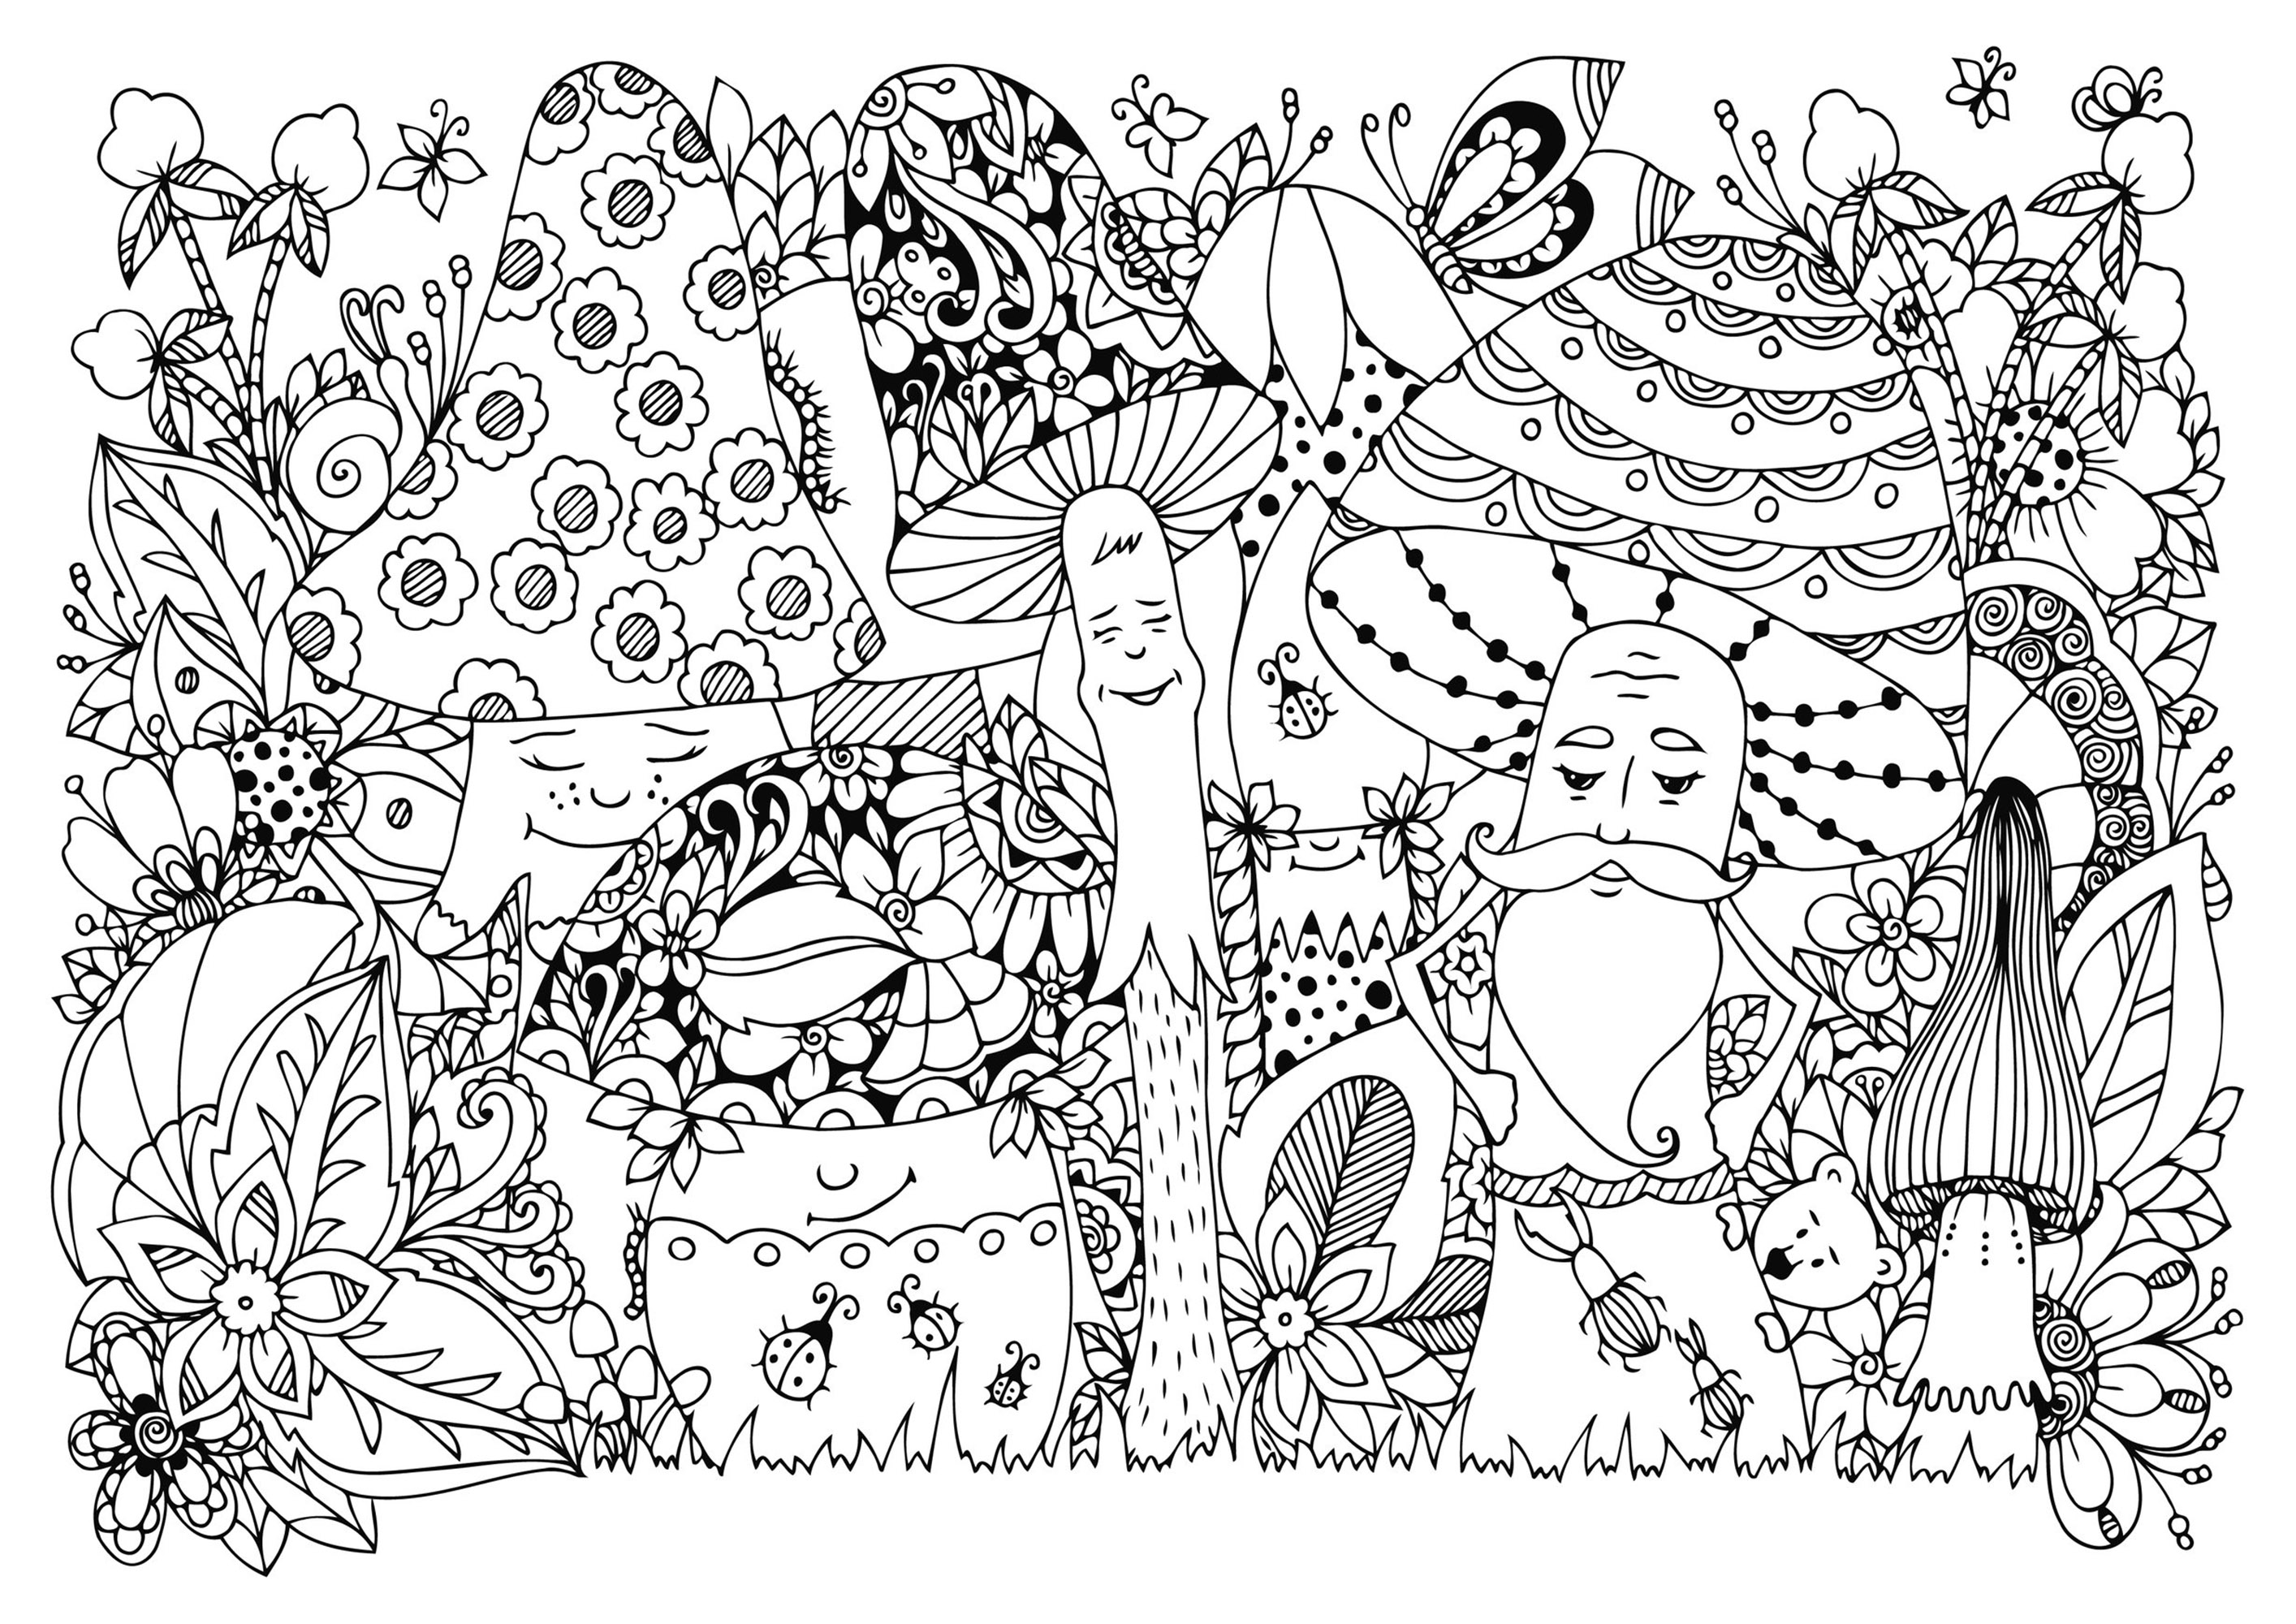 Setas felices en el bosque, con muchos insectos y flores. Muchos detalles ocultos para descubrir y colorear.